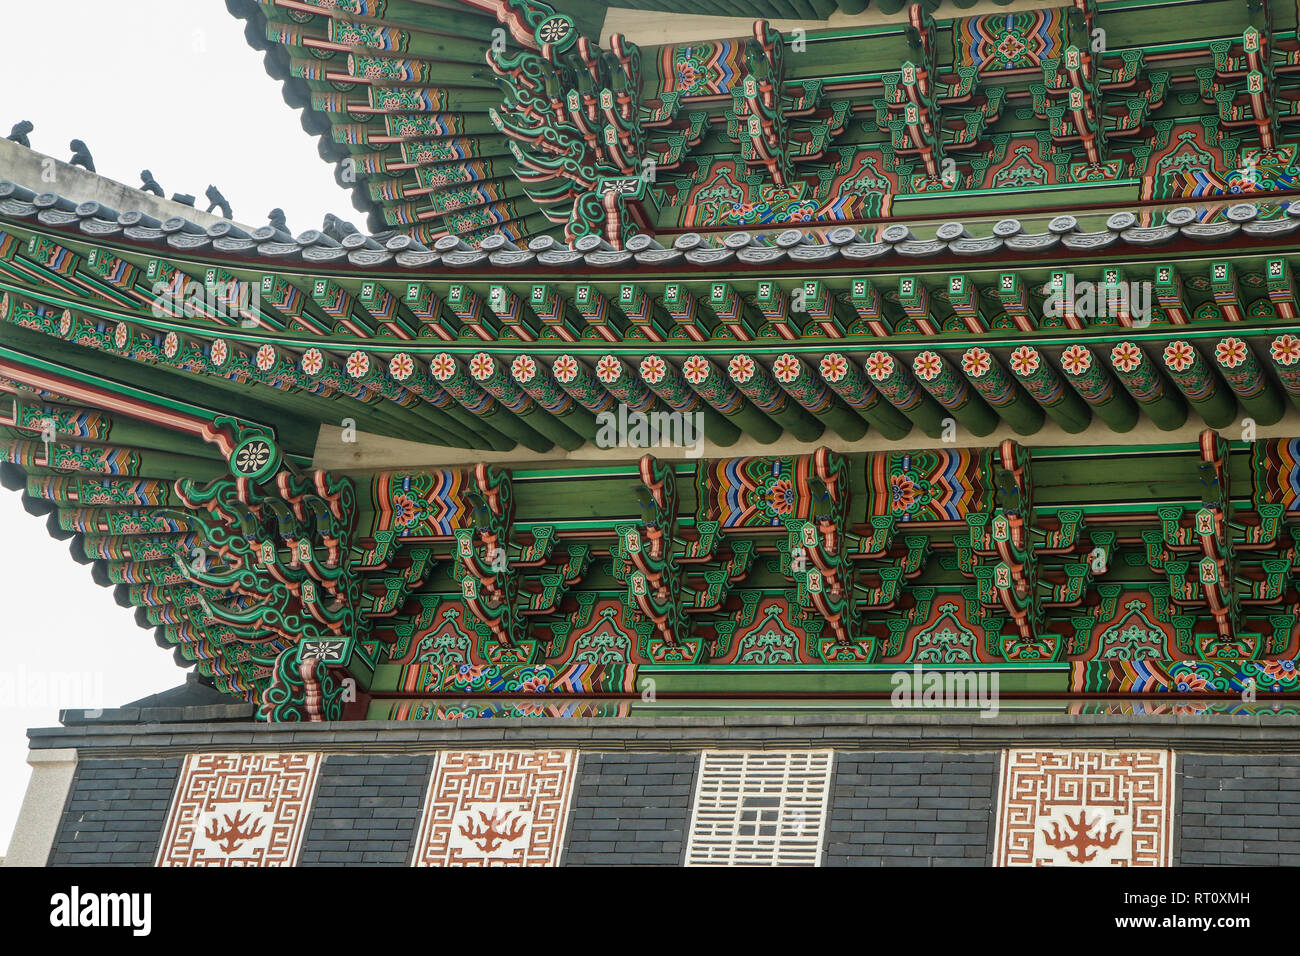 Ein Detail, das Bild von einem traditionellen hölzernen Dach eines koreanischen Palace. Sie können die Ornamente und Verzierungen. Stockfoto